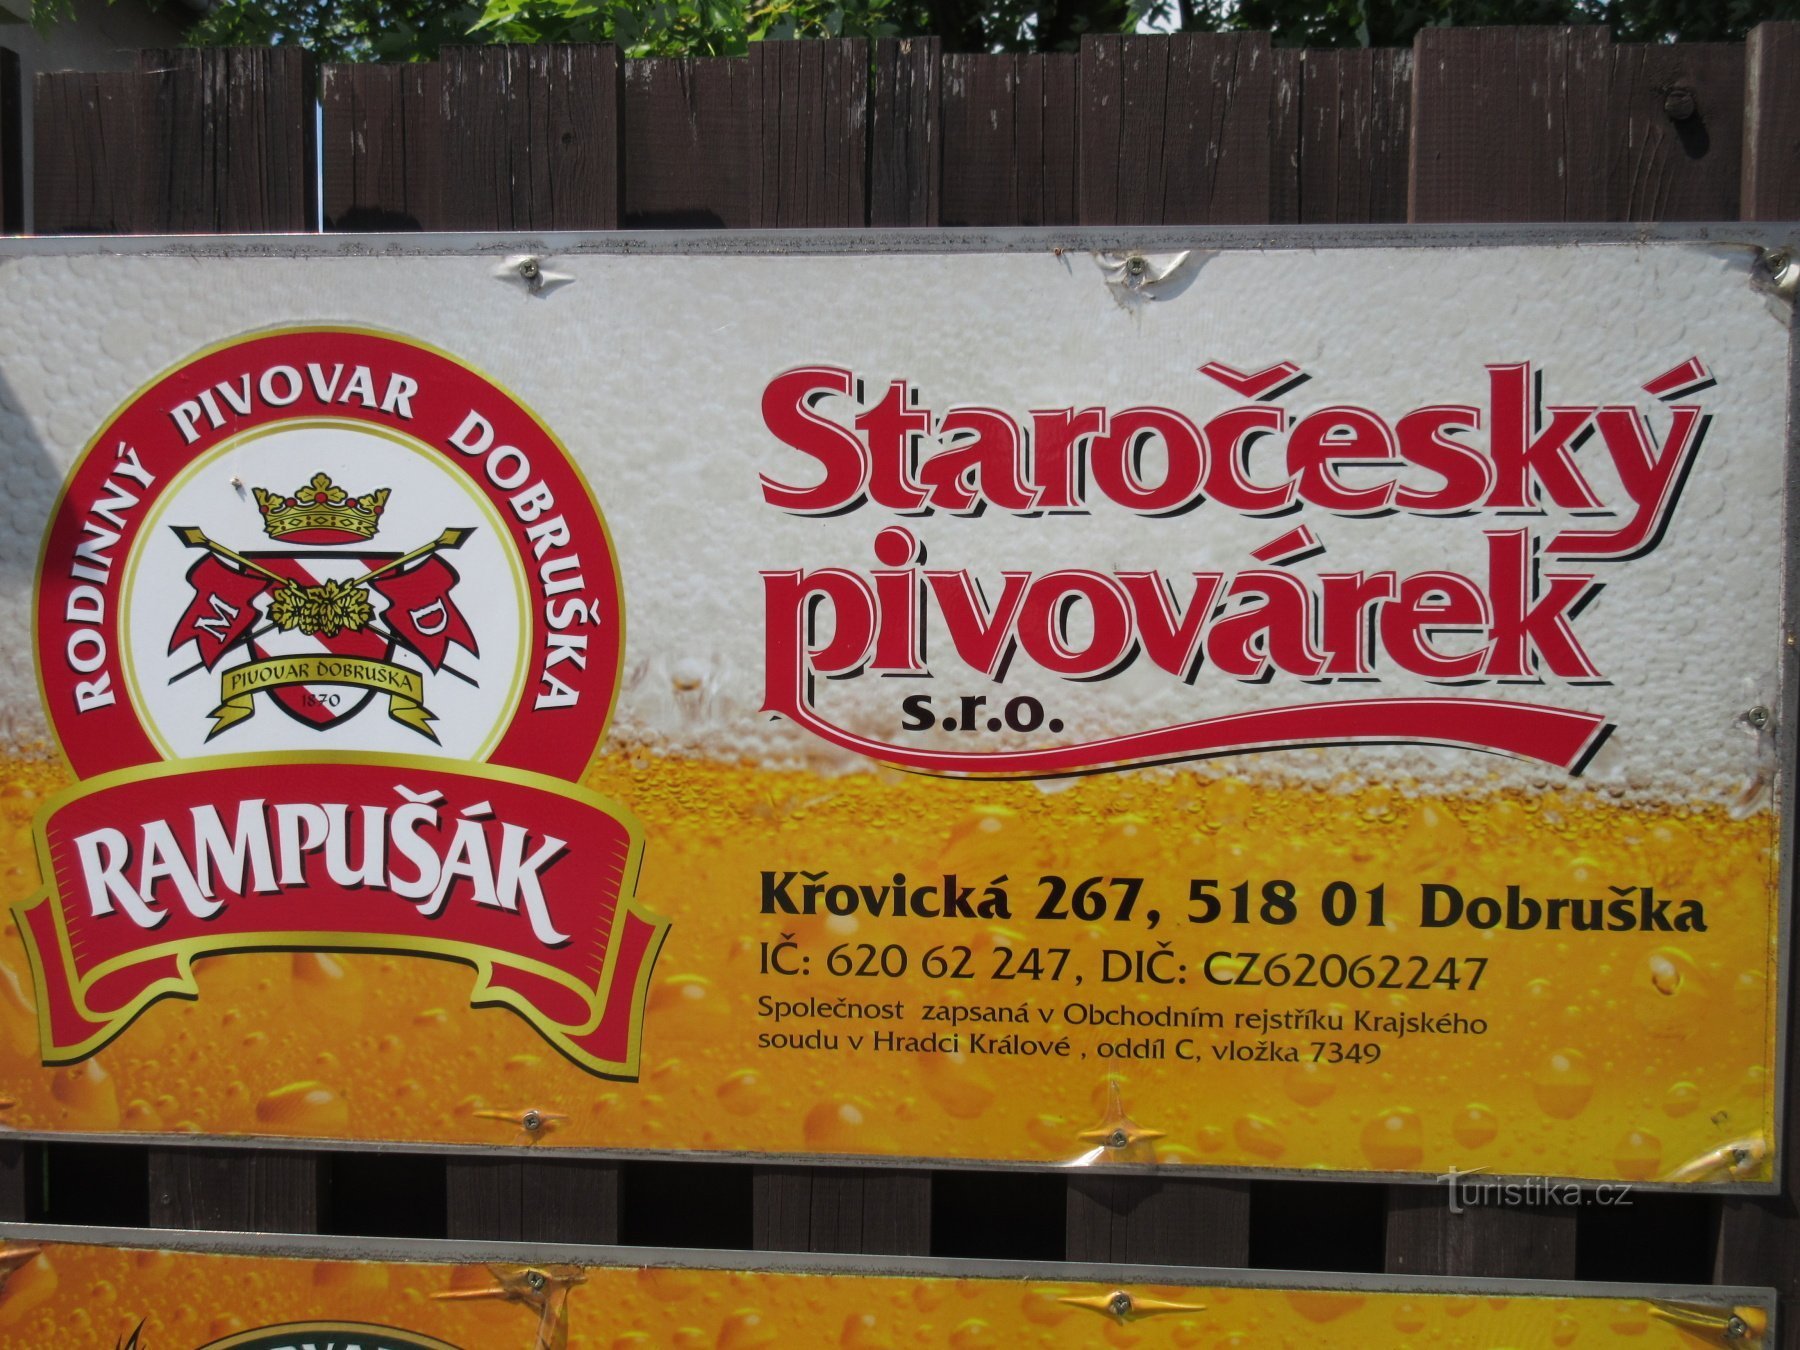 Dobruška - FL Heka (Věka) 的发源地、历史中心和 Rampušák 啤酒厂